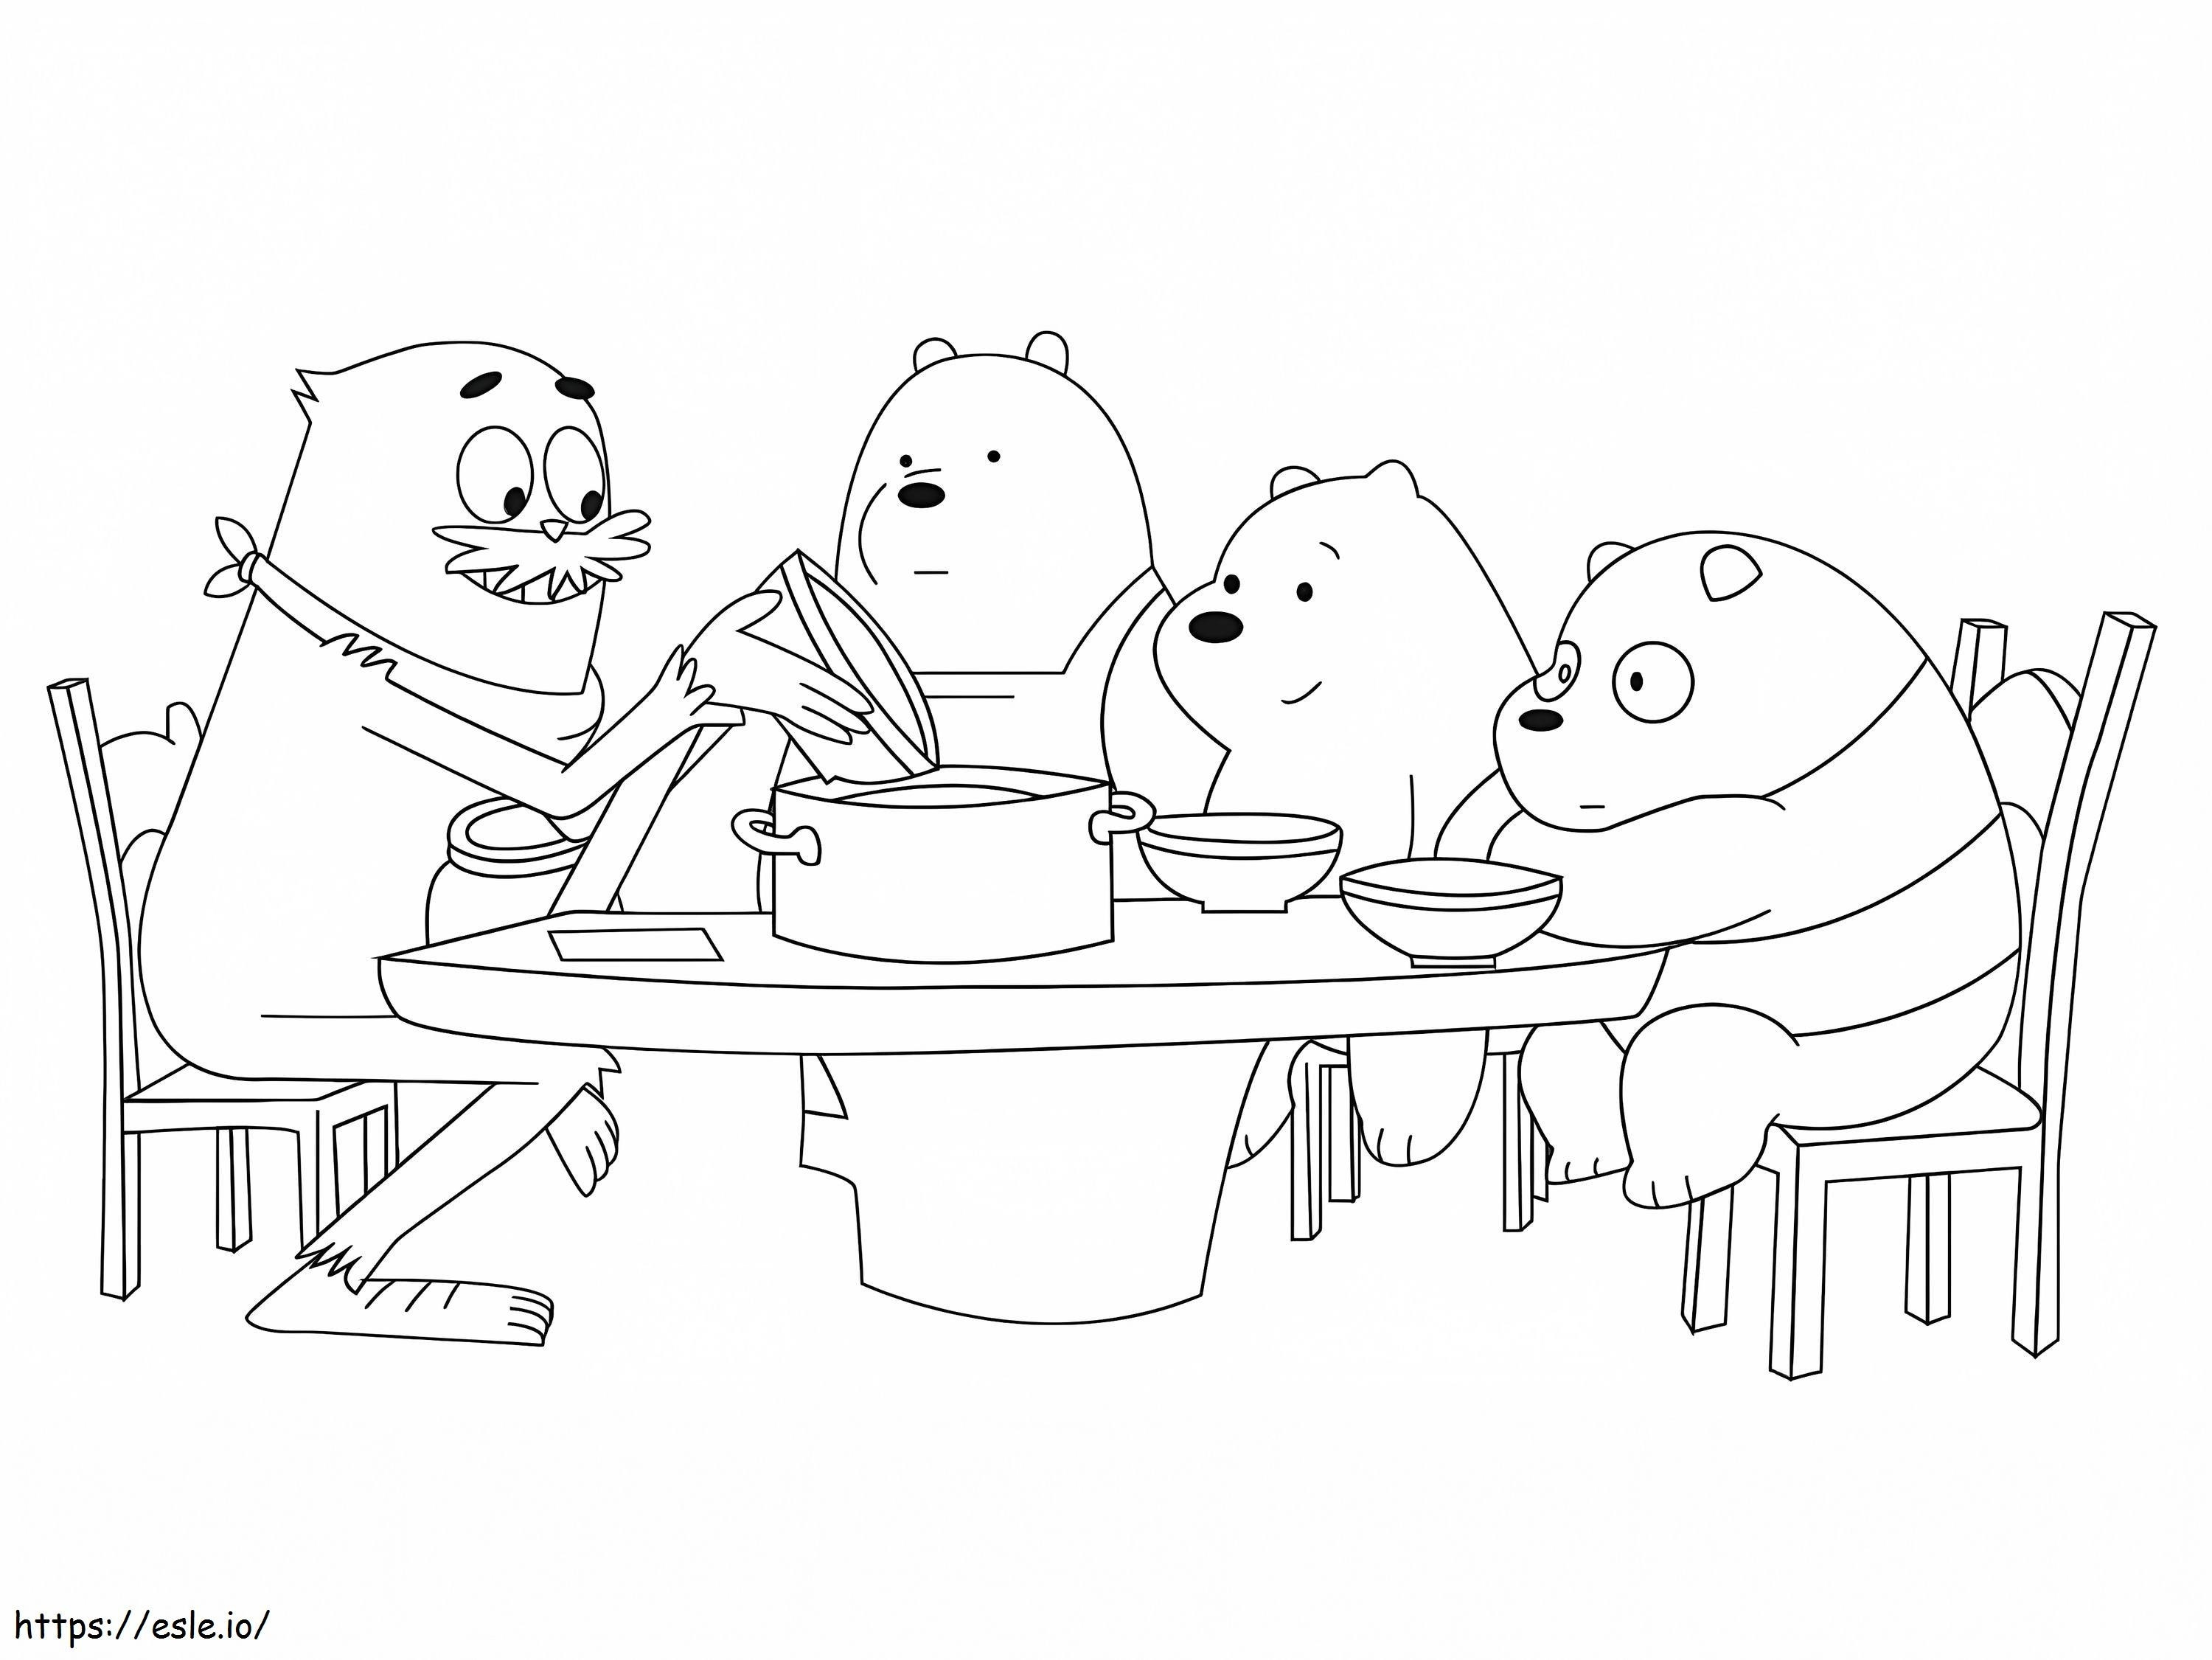 Drei Bären beim Essen ausmalbilder